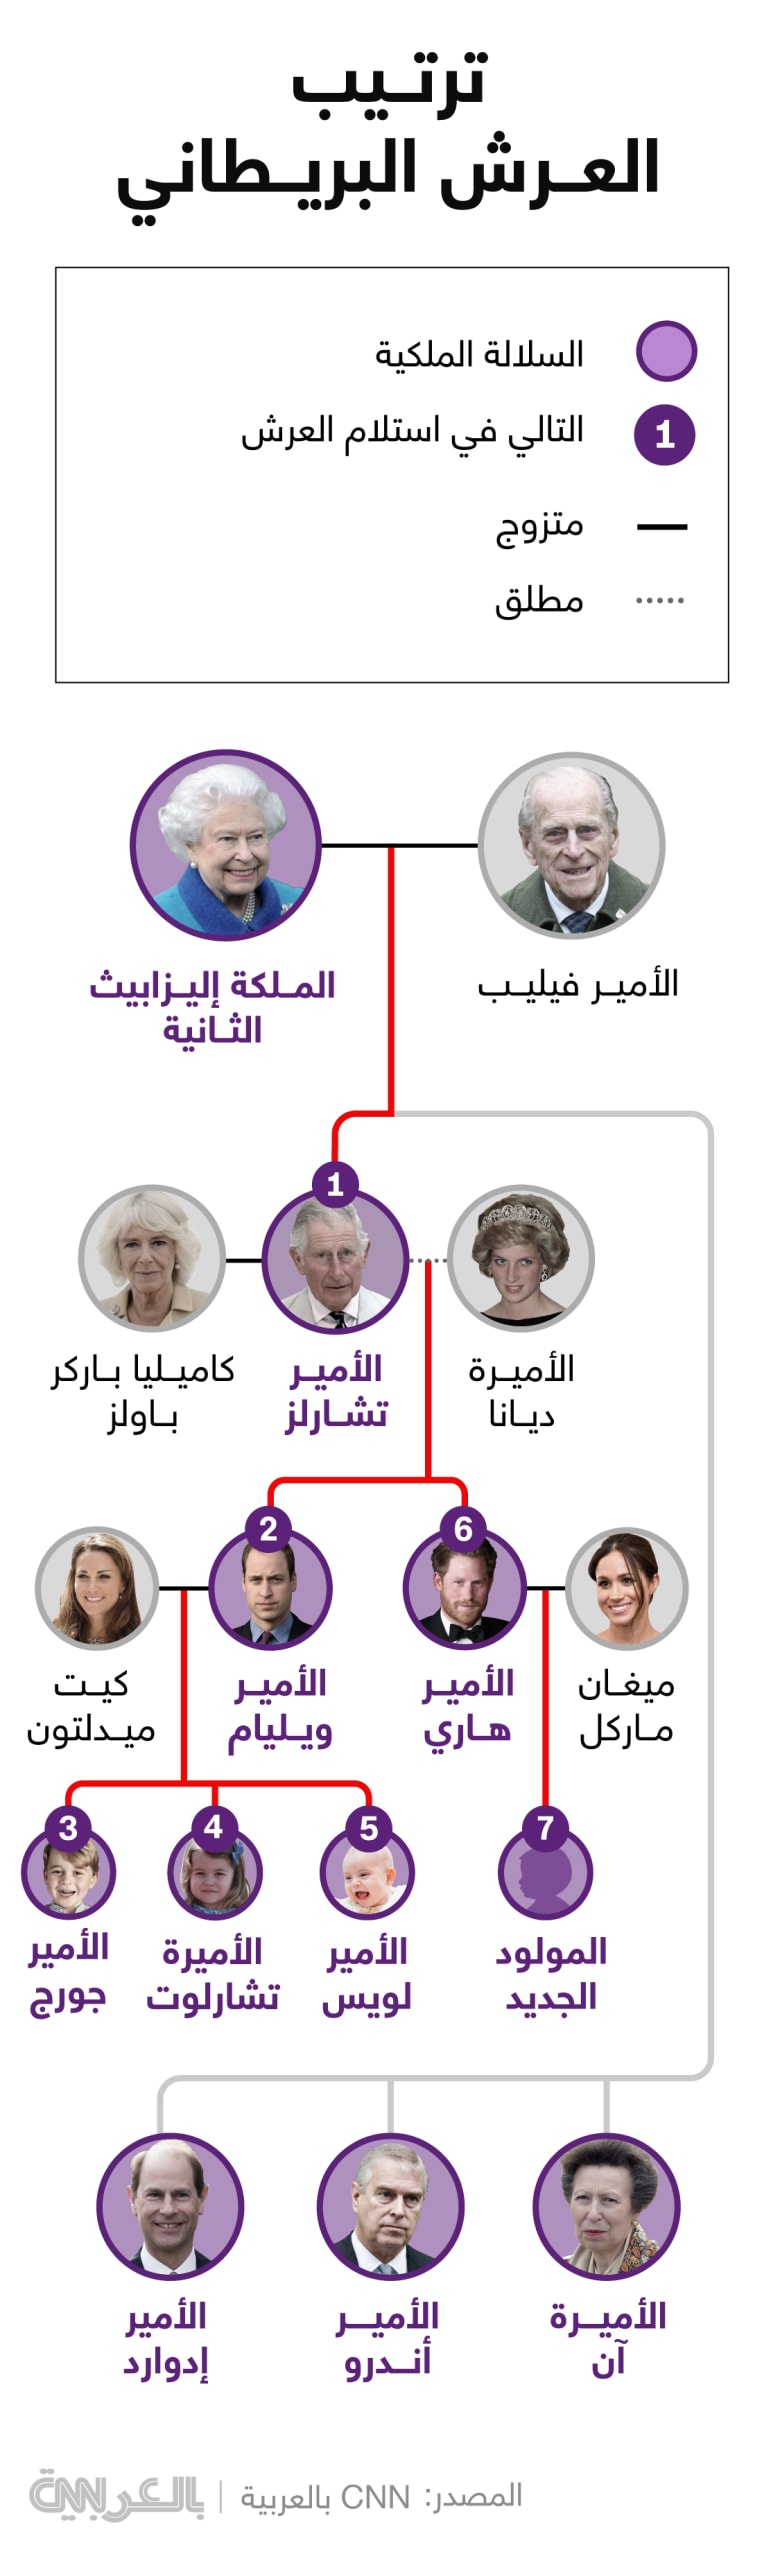 royal-family-tree